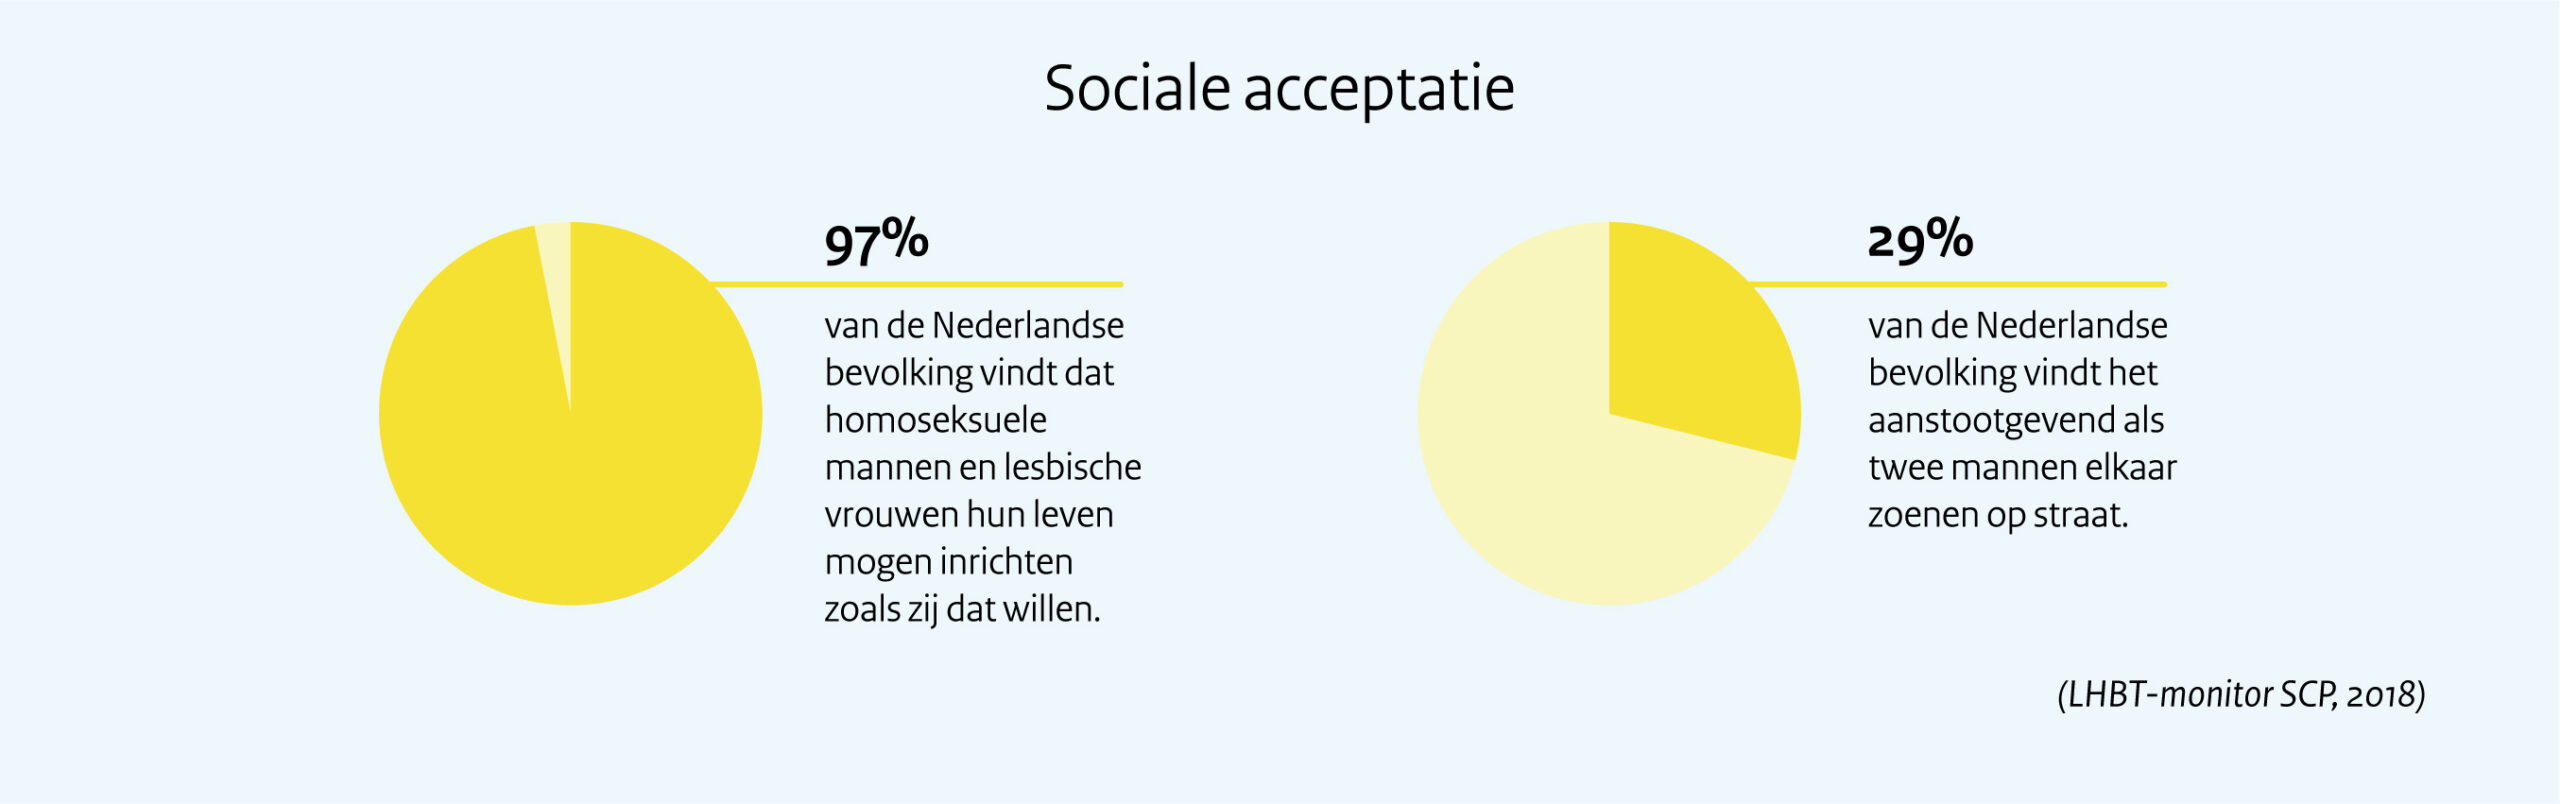 Sociale acceptatie. 97% van de Nederlandse bevolking vindt dat homoseksuele mannen en lesbische vrouwen hun leven mogen inrichten zoals zij dat willen. Daartegenover staat dat 29% van de Nederlandse bevolking het aanstootgevend vindt als twee mannen elkaar zoenen op straat.   Deze cijfers komen uit de LHBT-monitor die het SCP in 2018 publiceerde.